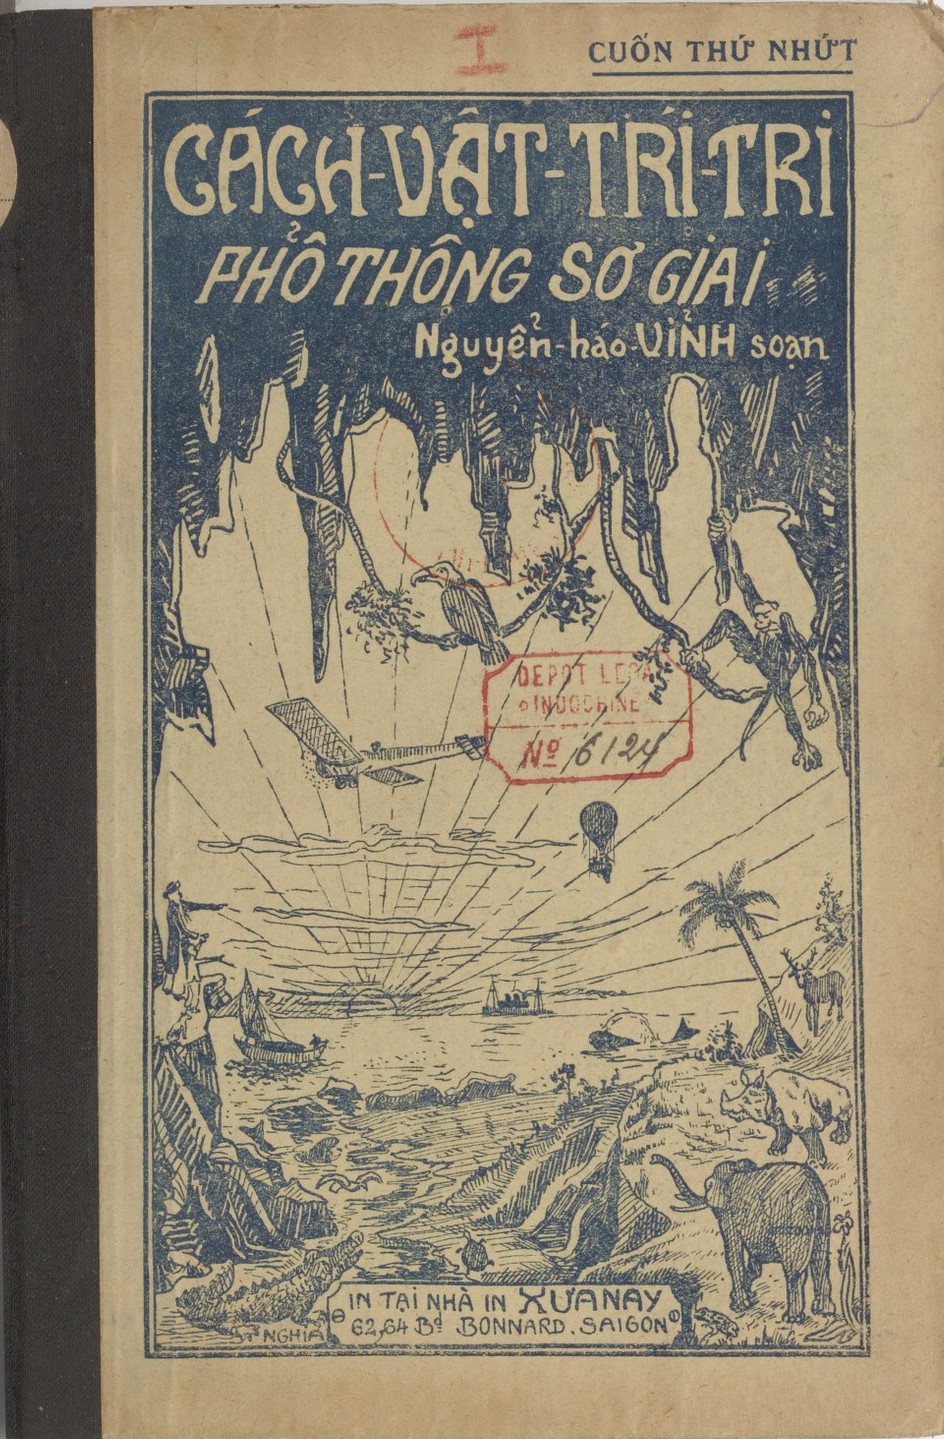 Khám đập tranh giành minh họa và bìa sách xưa của một trong những danh họa Việt